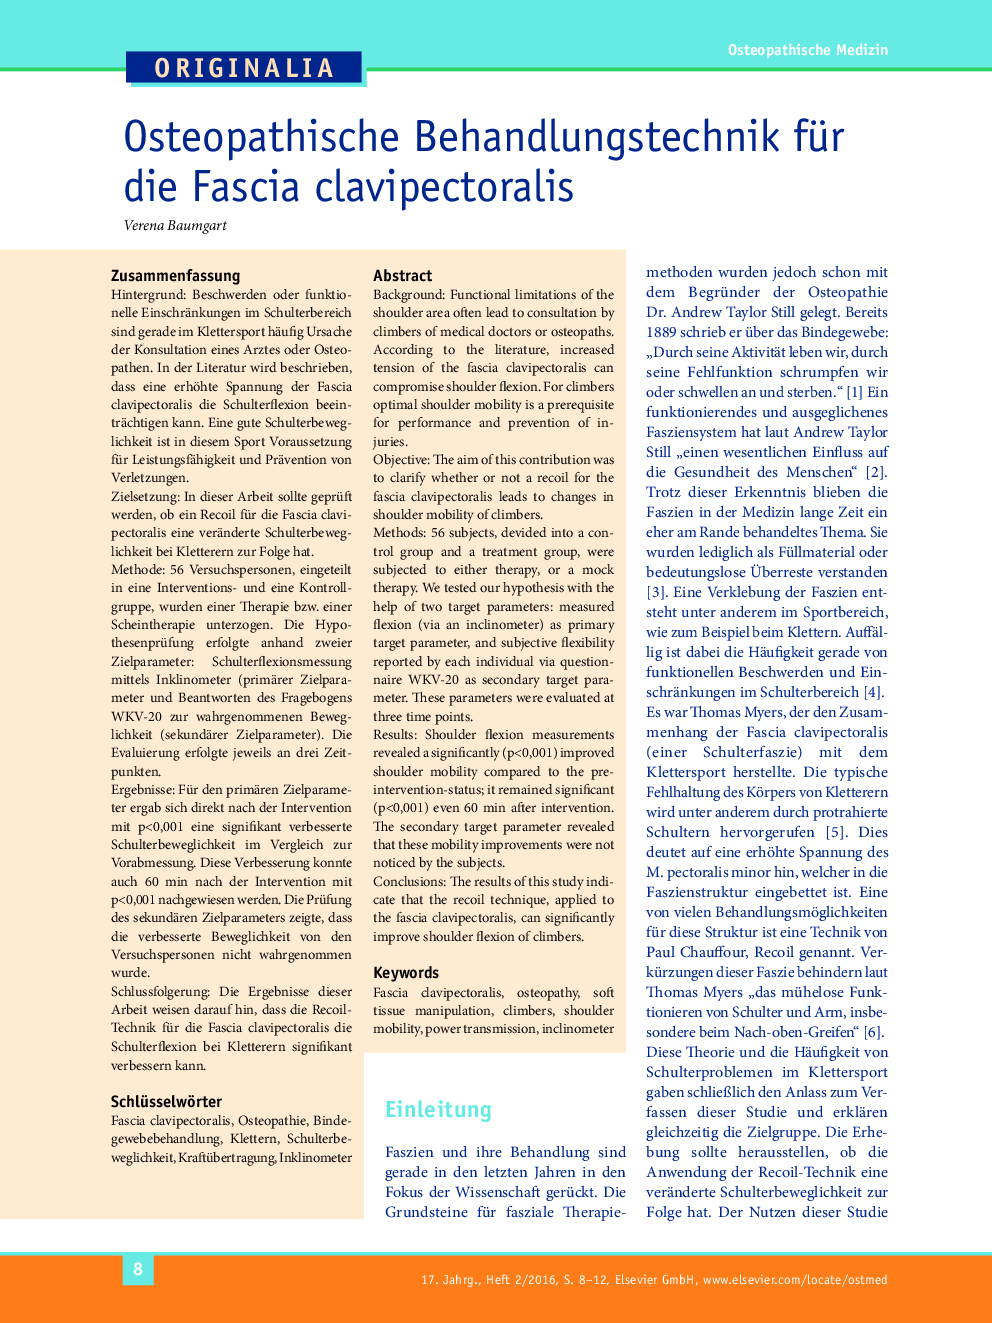 Osteopathische Behandlungstechnik für die Fascia clavipectoralis